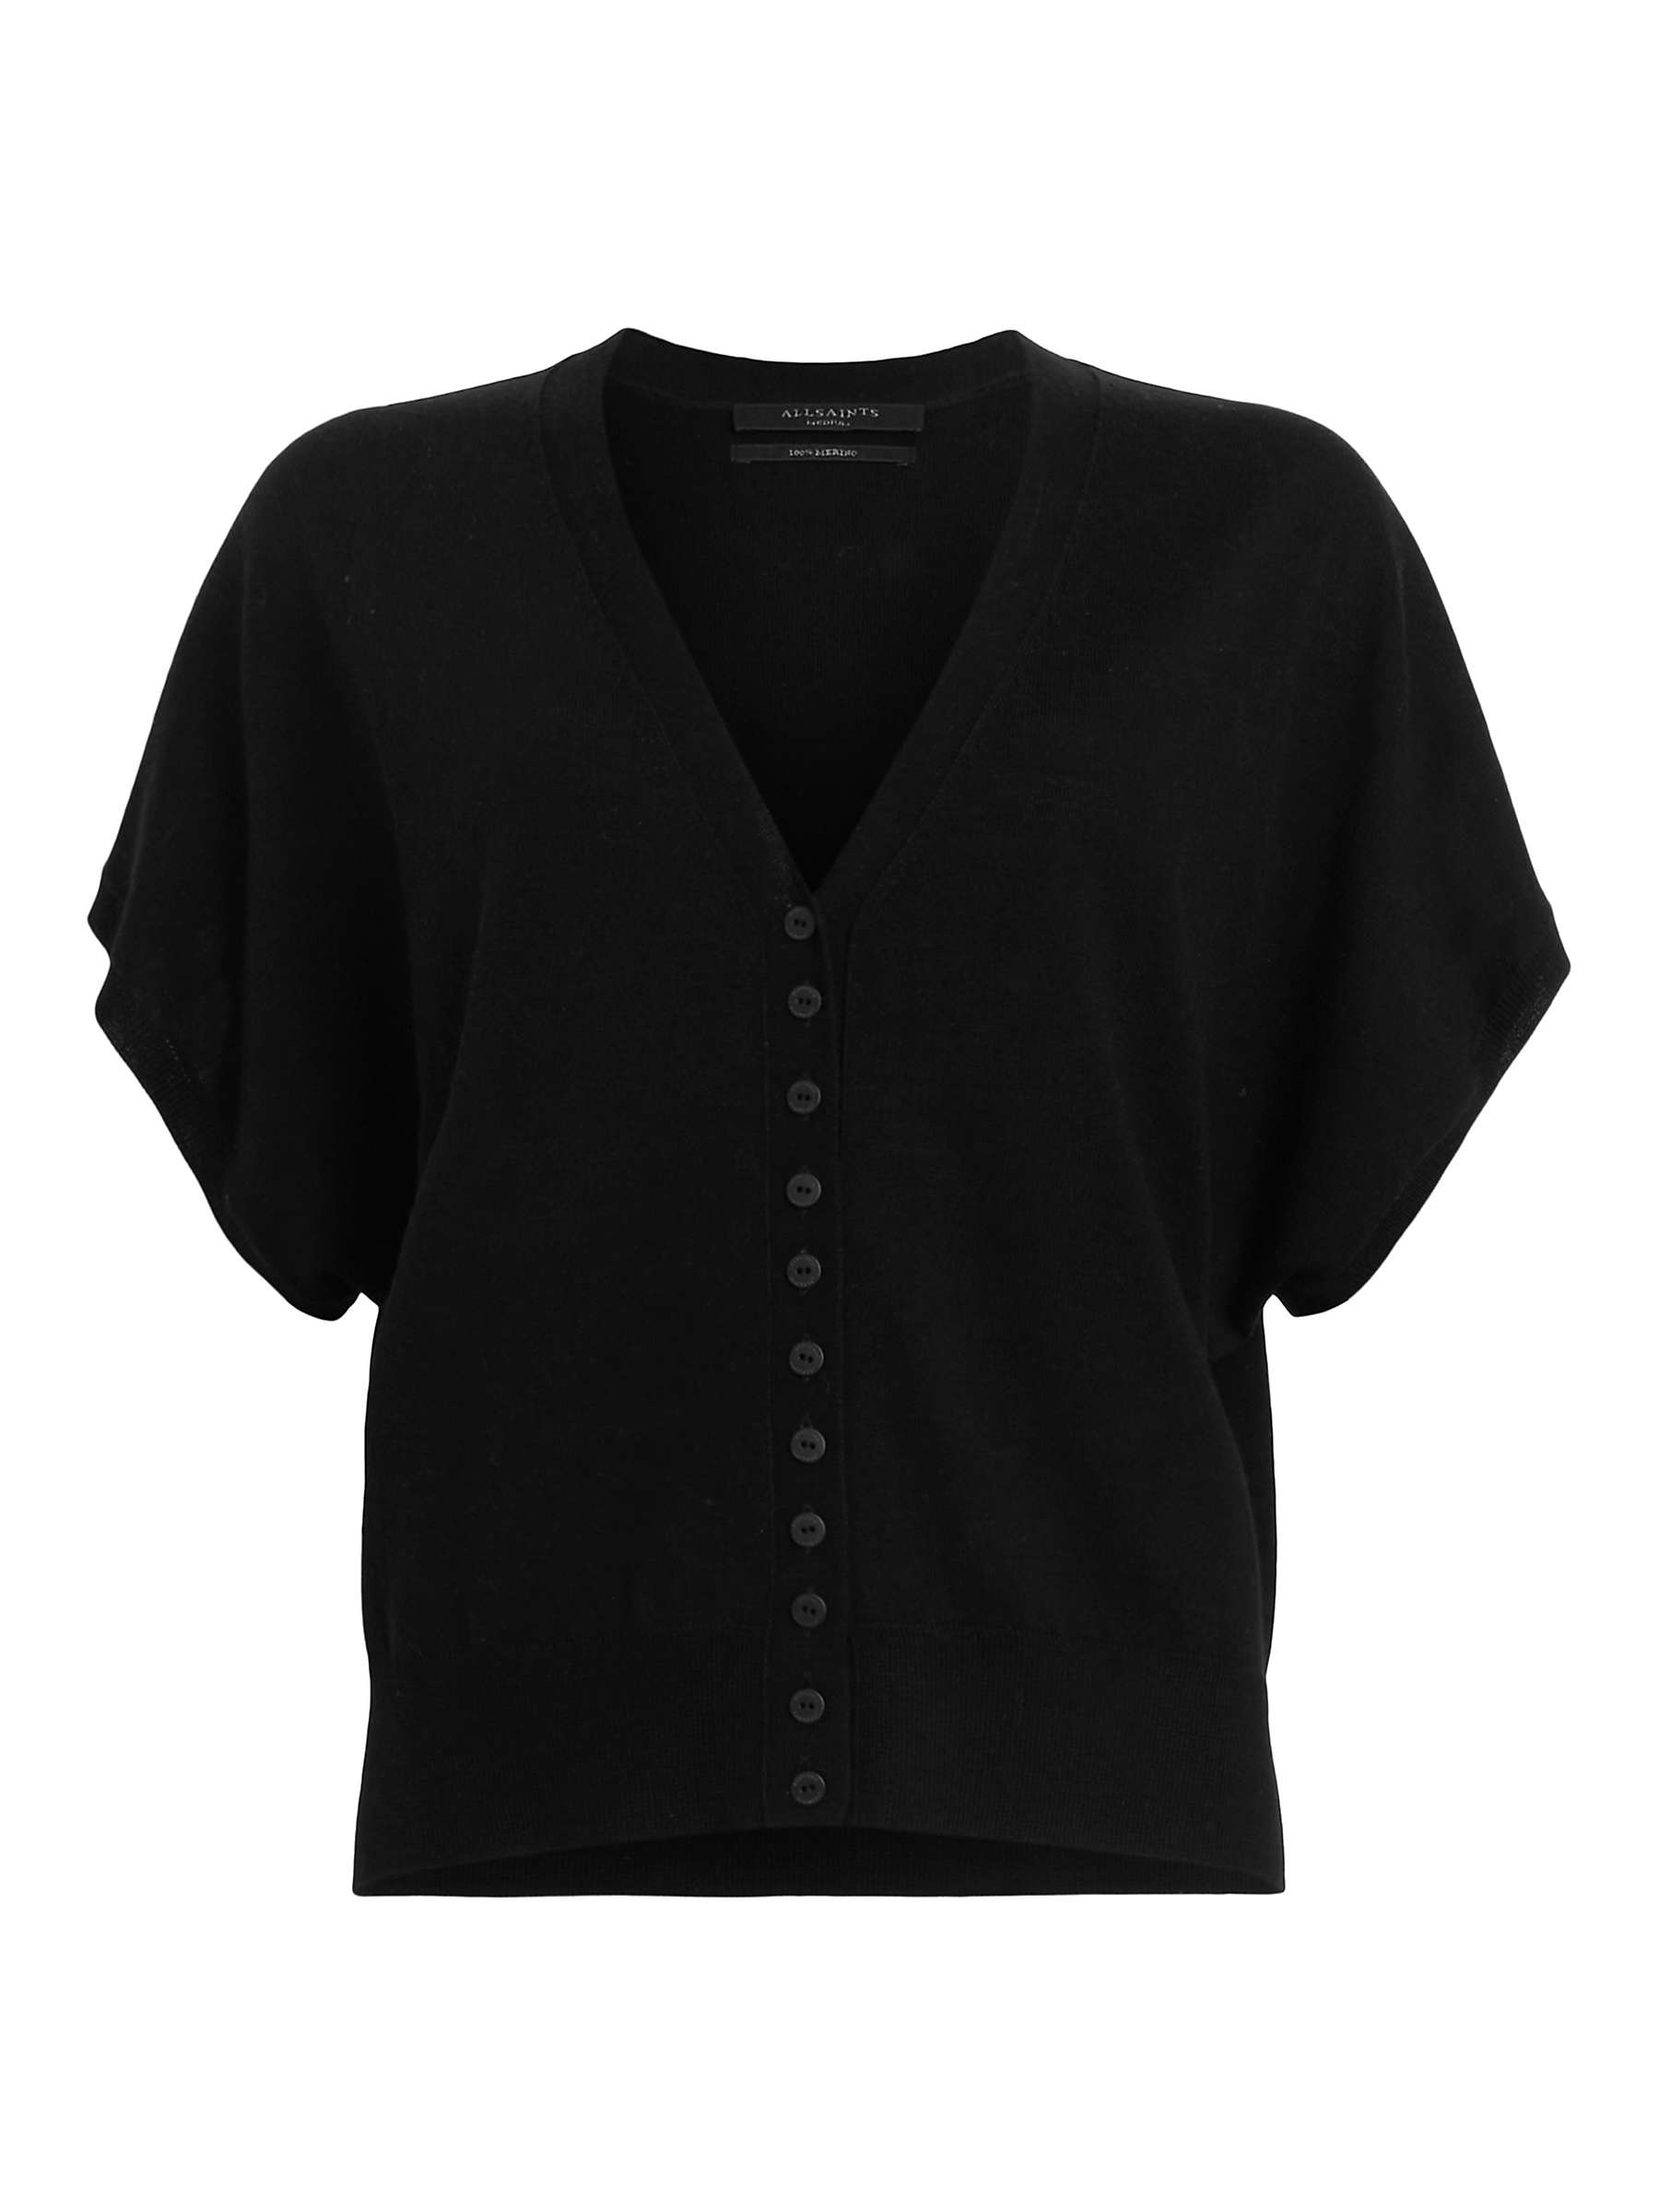 Buy AllSaints Bronte Wool Short Sleeve Cardigan Online at johnlewis.com